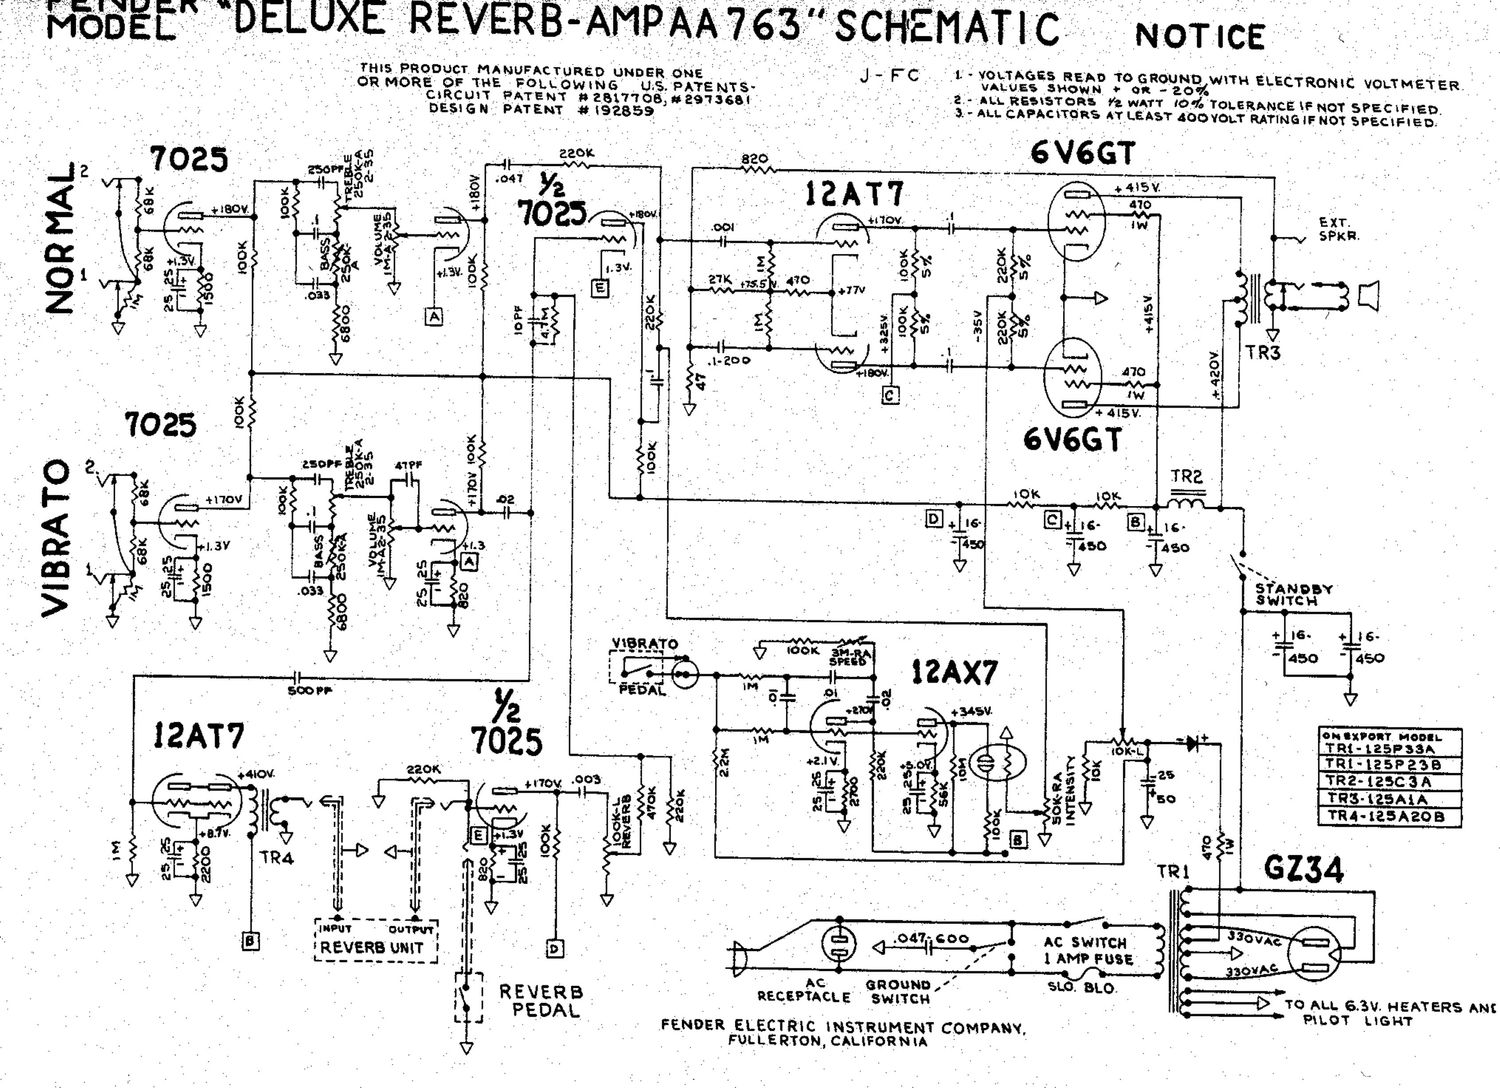 fender deluxe reverb aa763 schematic